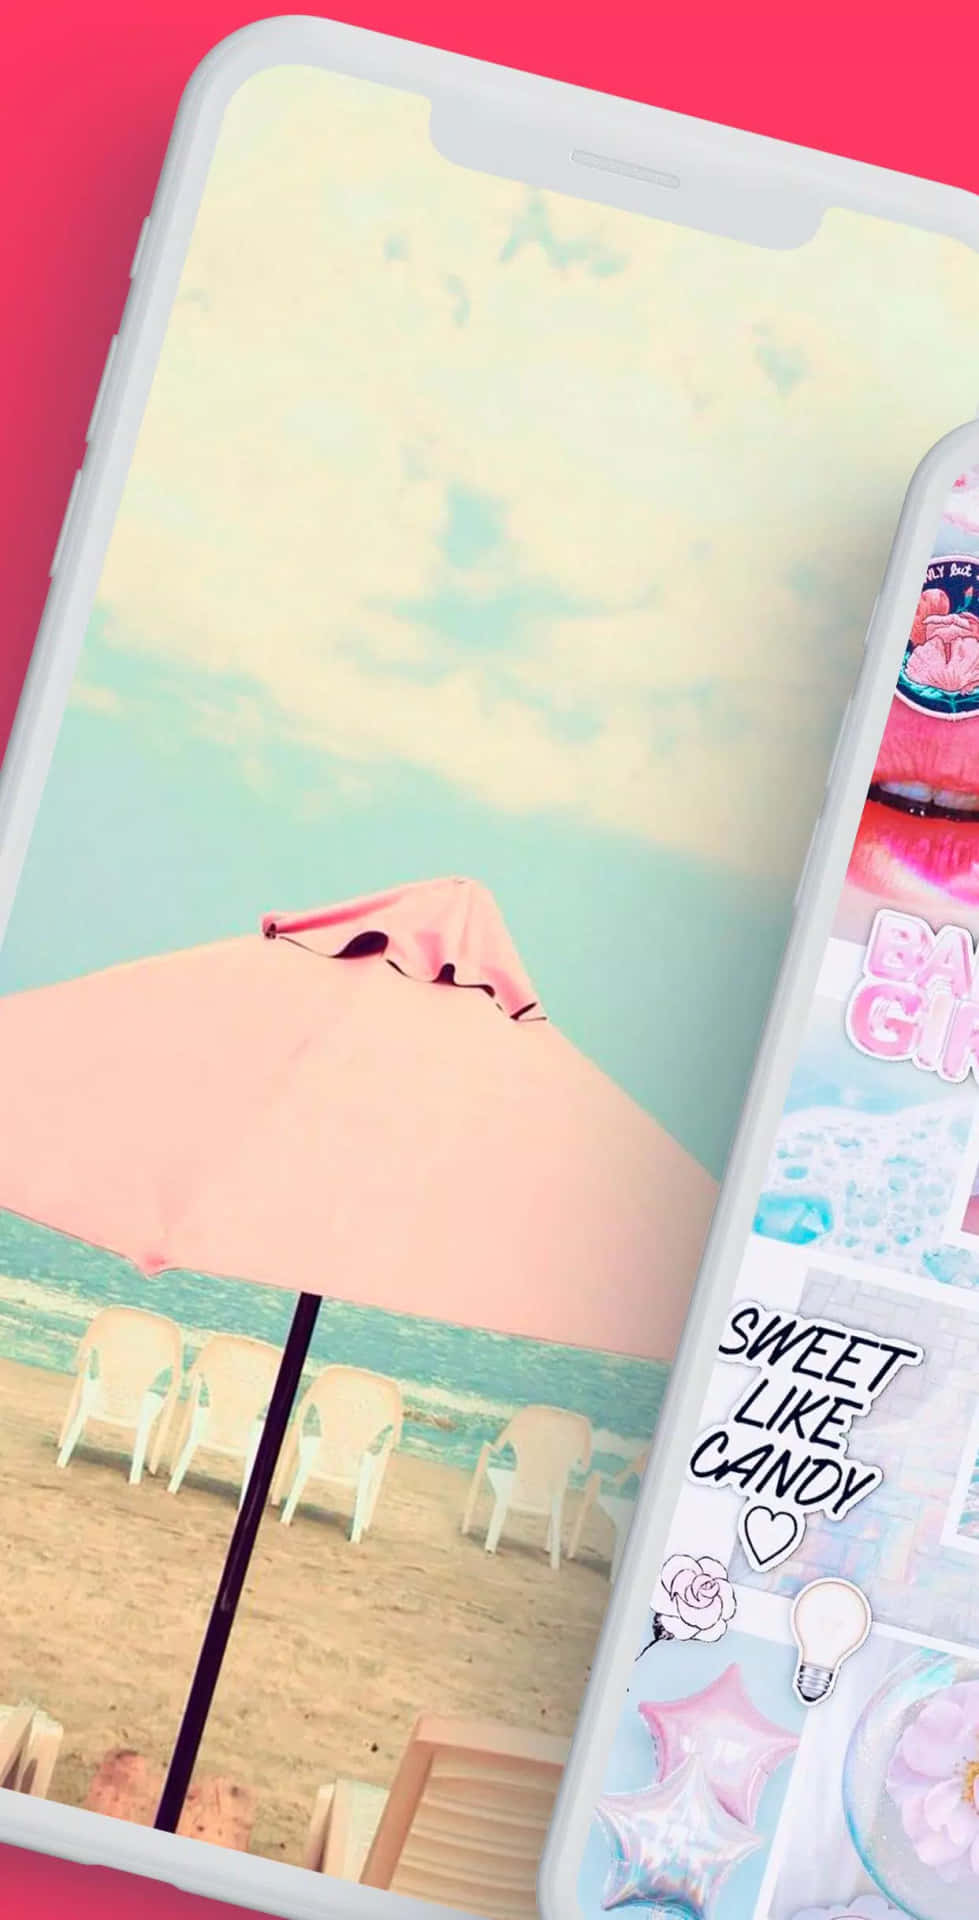 A Pink Phone With A Pink Umbrella And A Pink Umbrella Wallpaper